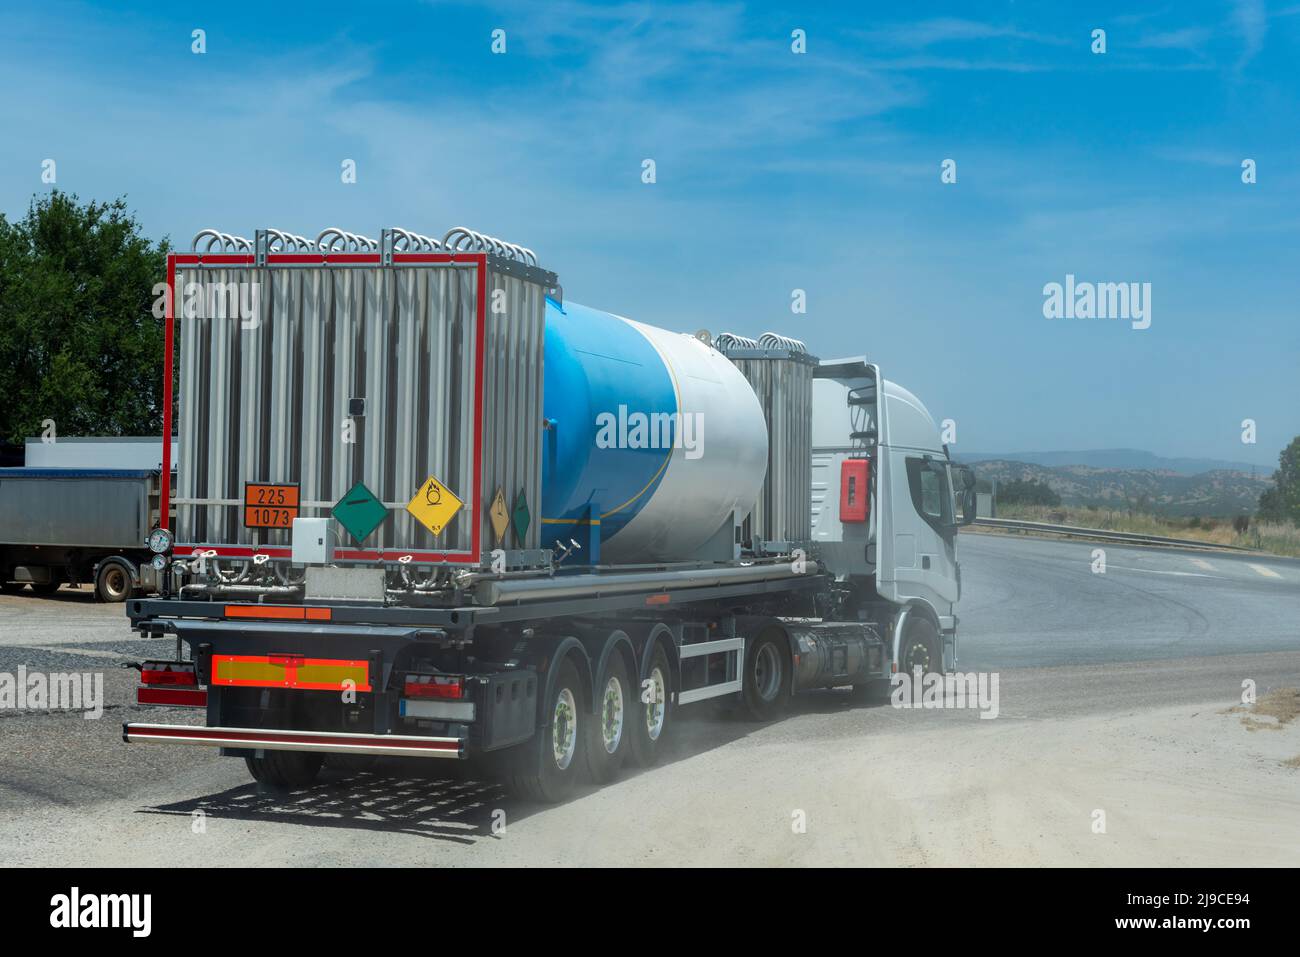 Camion-citerne pour le transport de gaz cryogéniques, d'oxygène liquide, avec refroidisseurs pour maintenir des températures basses. Banque D'Images